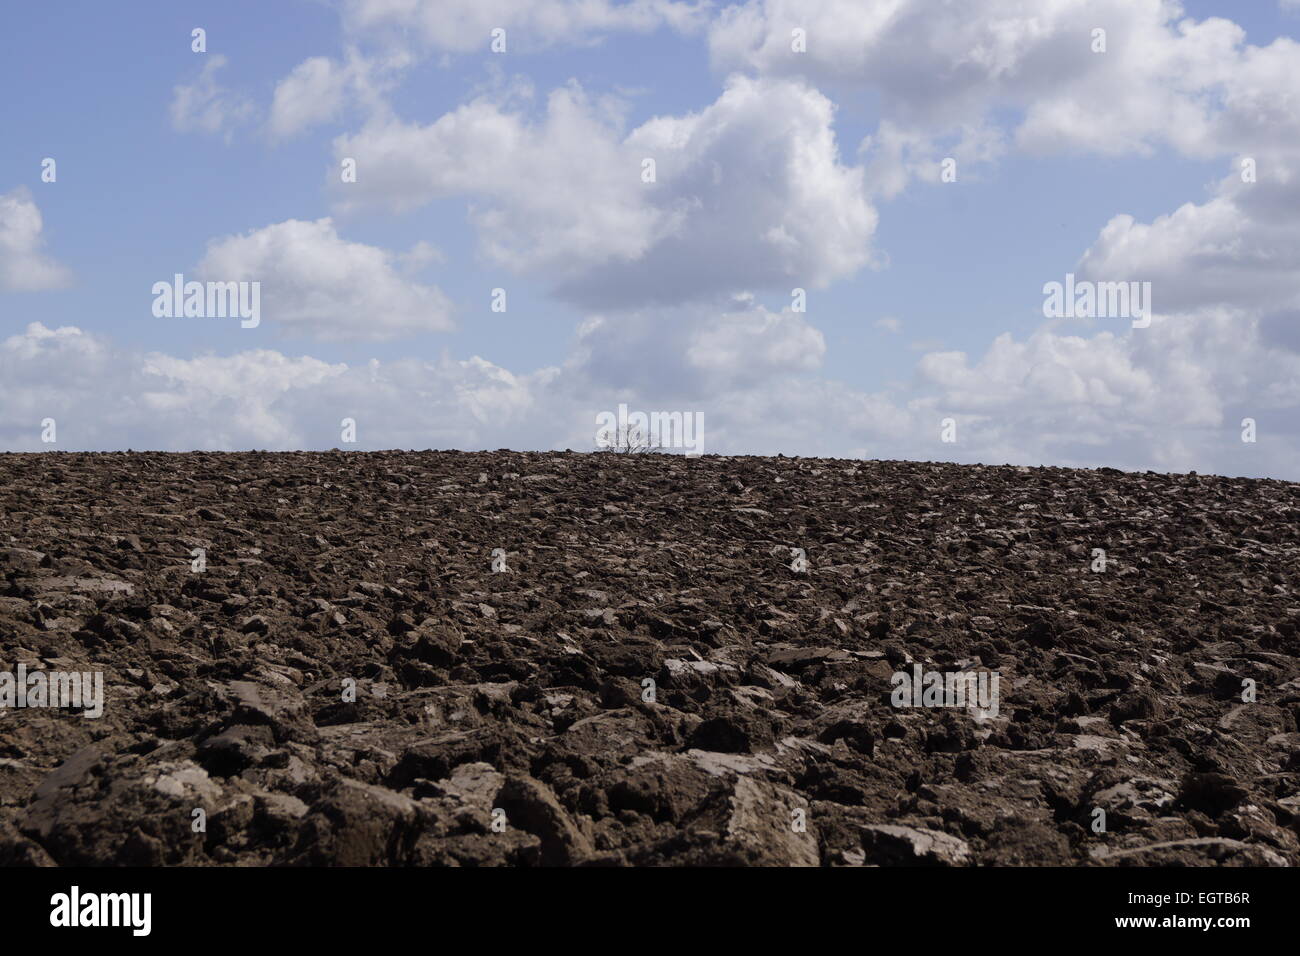 Frisch gepflügten Feld, Boden, Schlamm, mit klaren Horizont, blauer Himmel und Wolken. Stockfoto